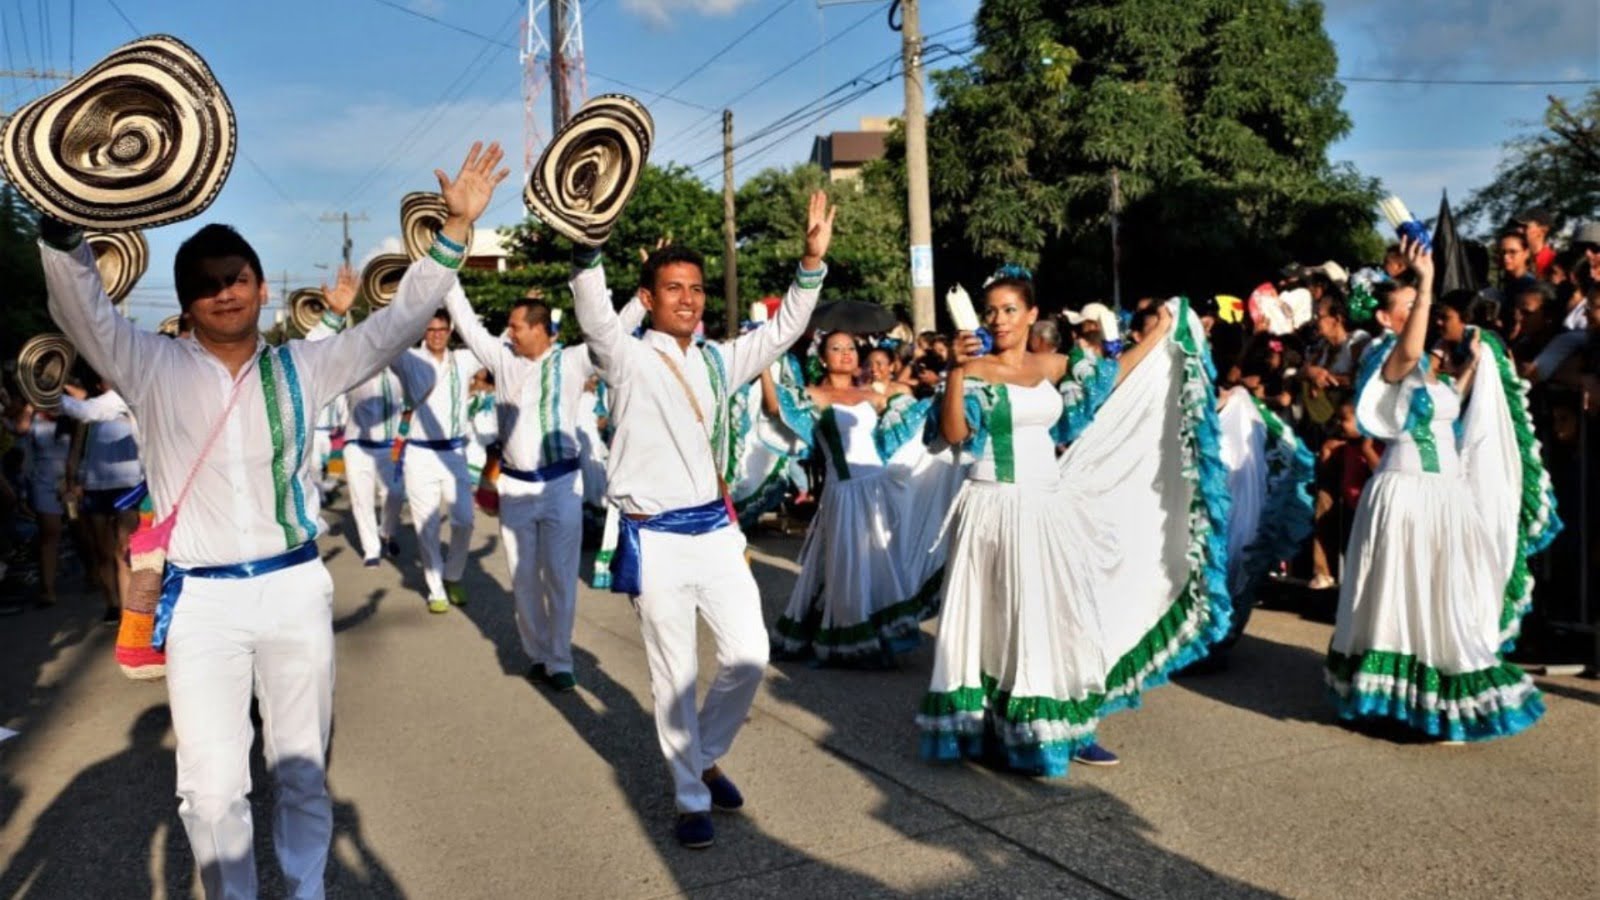 Este 1 de mayo habrá desfile de comparsas por aniversario de Montería - feria nacional de la ganaderia